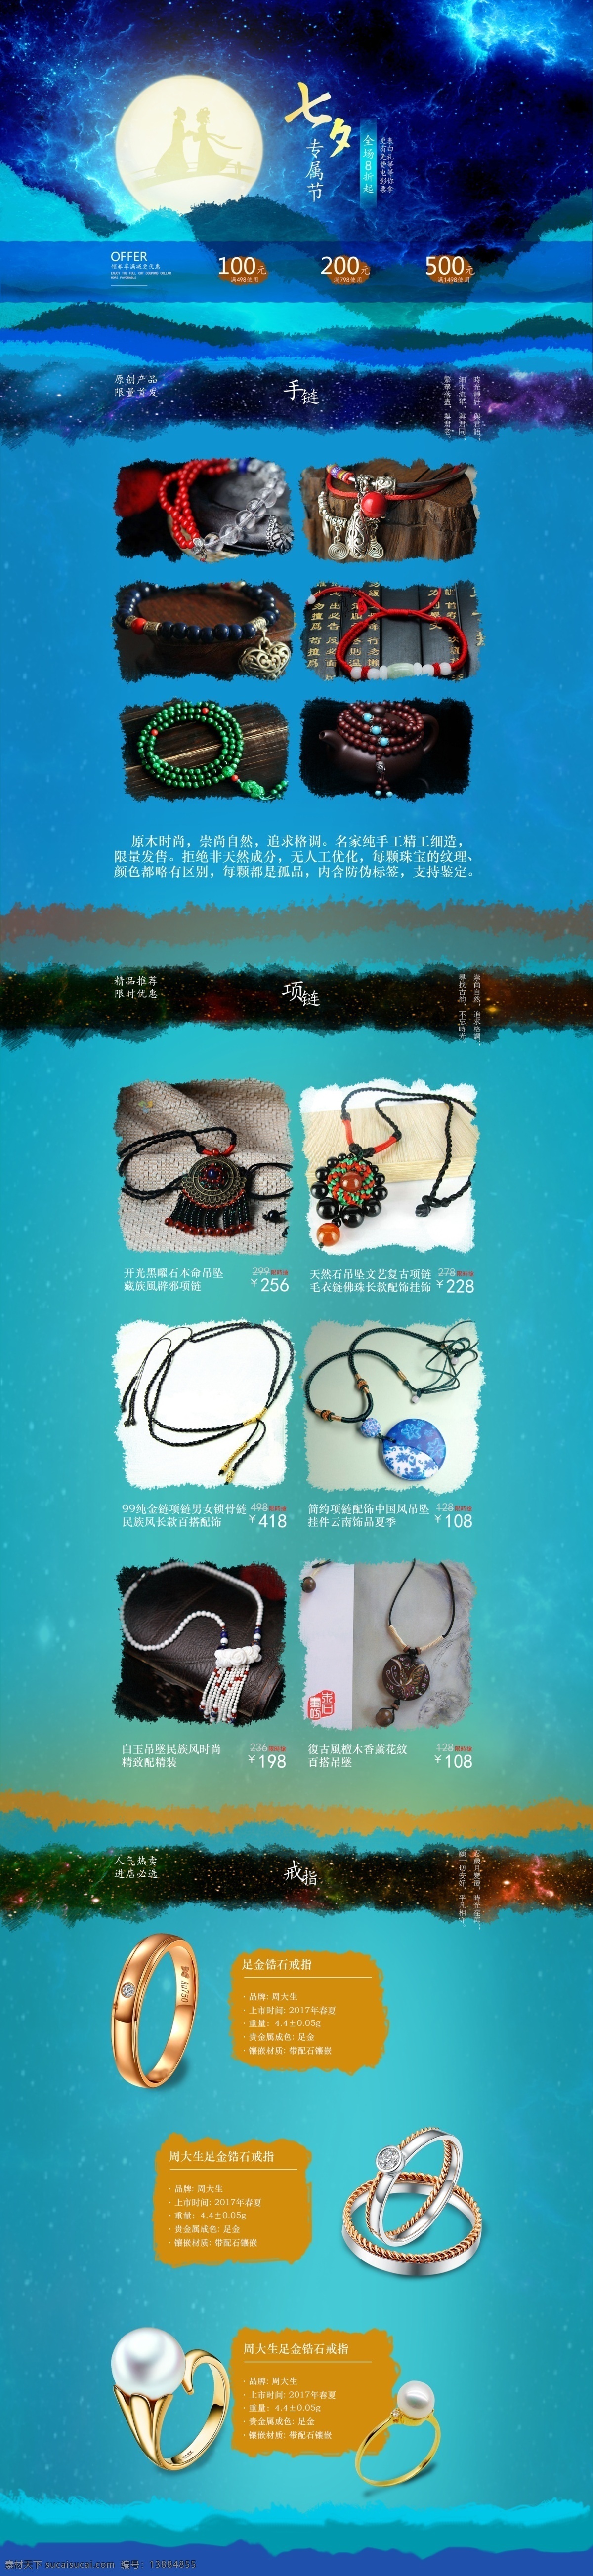 七夕 珠宝 淘宝 模板 情人节 专题 饰品 促销 戒指 项链 手链 蓝色